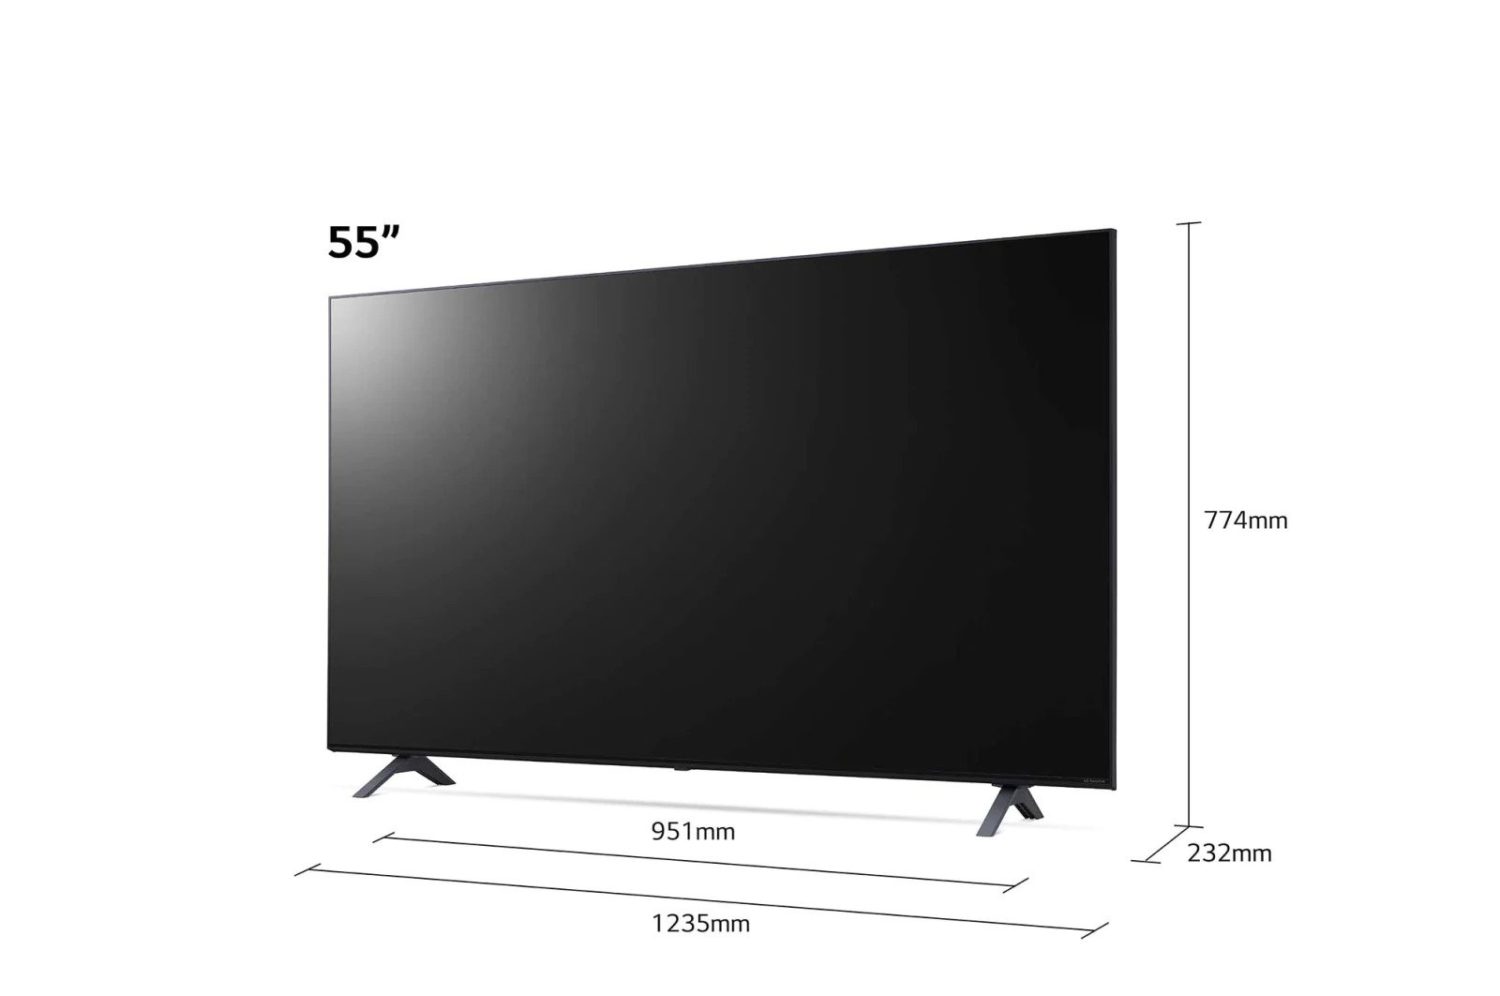 Габаритные Размеры телевизоров в метрах. Ширина телевизора диагональю 55 дюймов